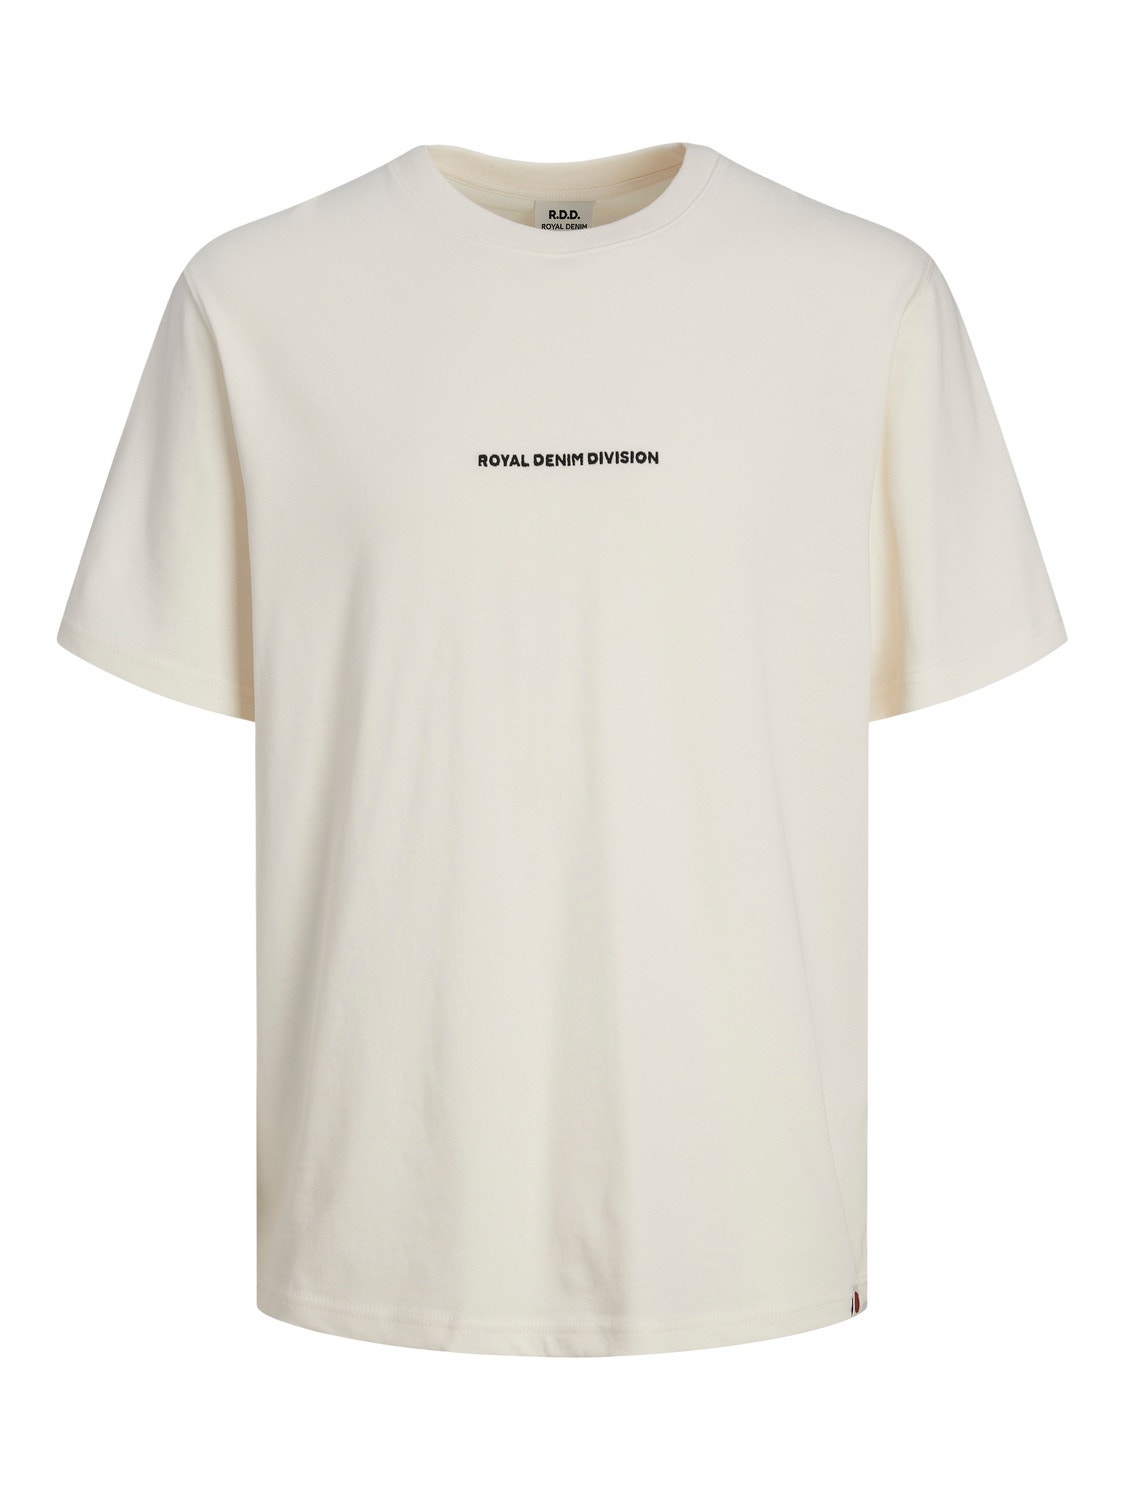 Jack & Jones RDD Trykk O-hals T-skjorte -Egret - 12253392